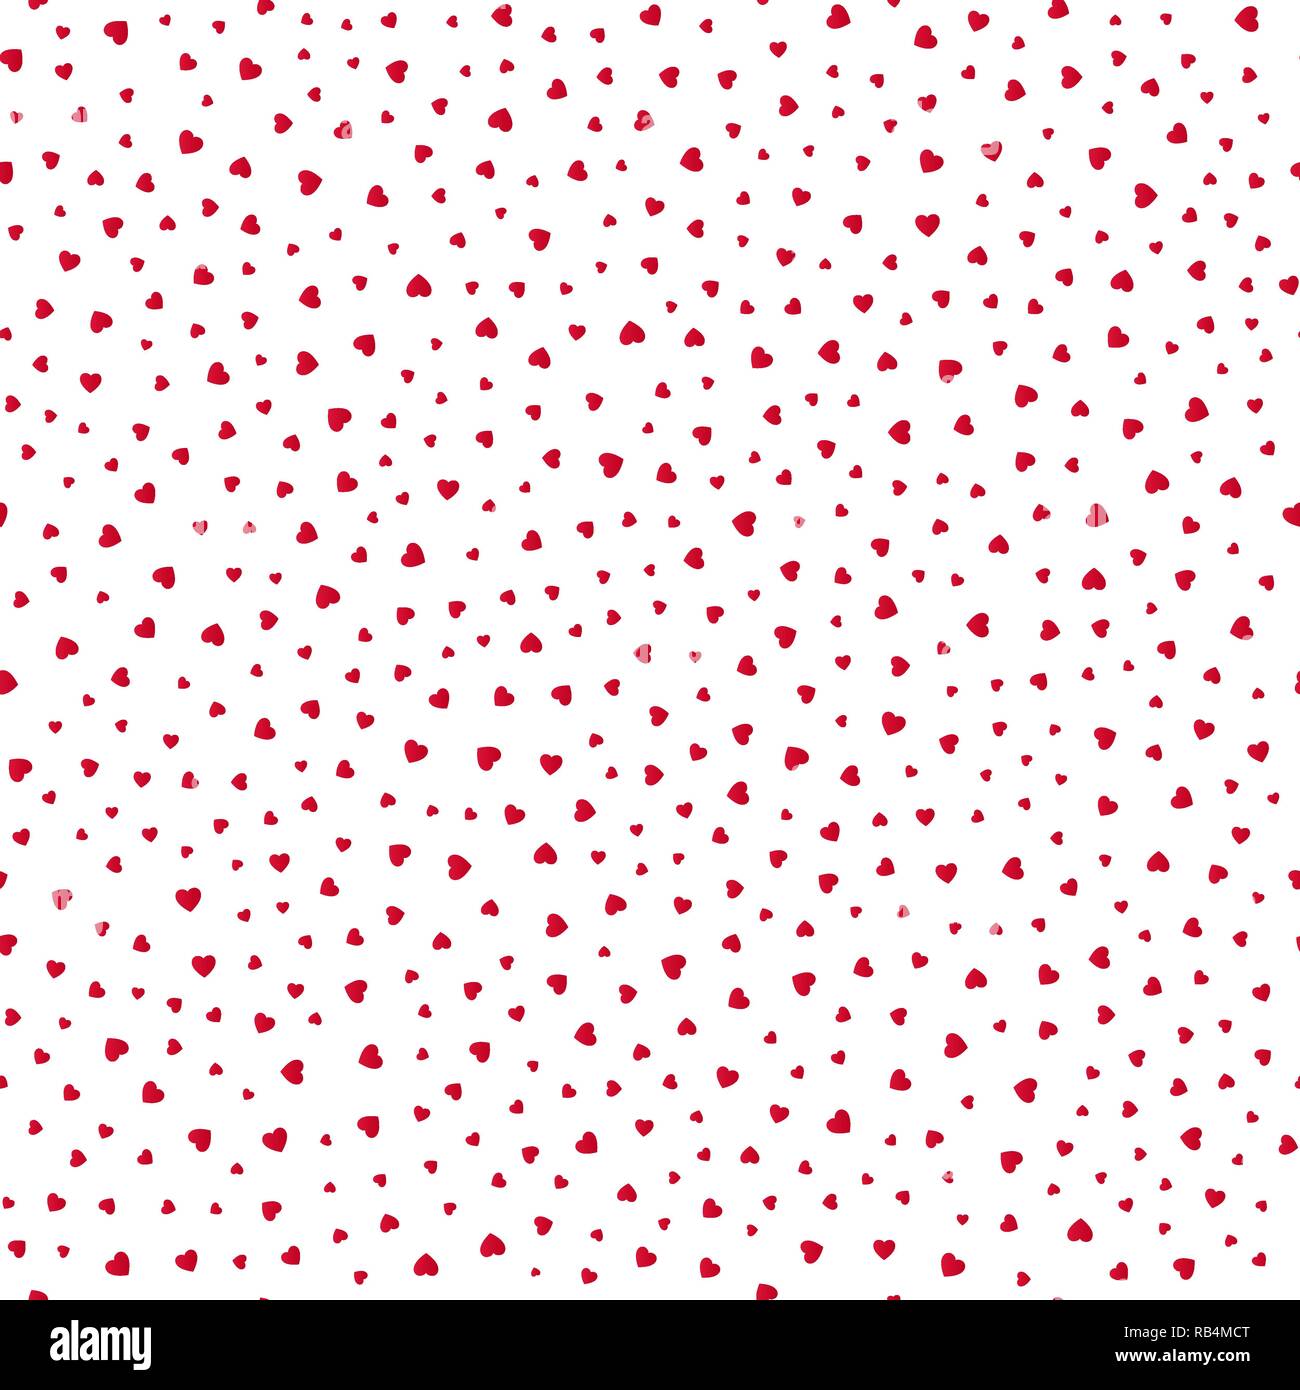 Nahtlose Muster mit roten Herzen auf weißem Hintergrund. Vector Illustration Stock Vektor